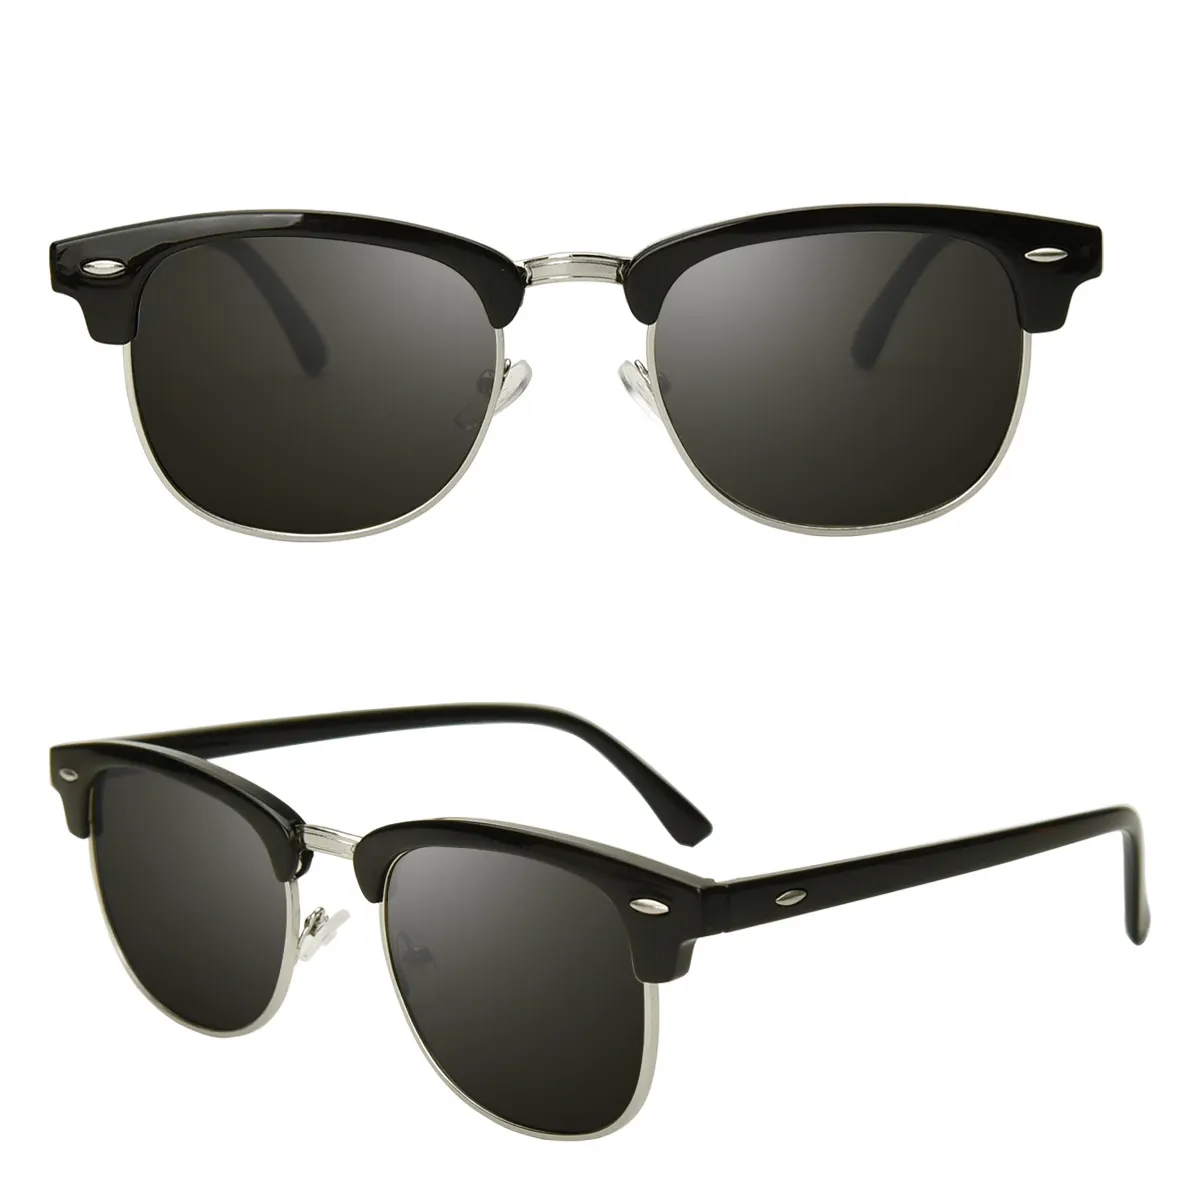 Bingking kacamata hitam terpolarisasi logam gaya hidup bersepeda mode bingkai TR90 desainer baru kualitas tinggi grosir Pria Wanita